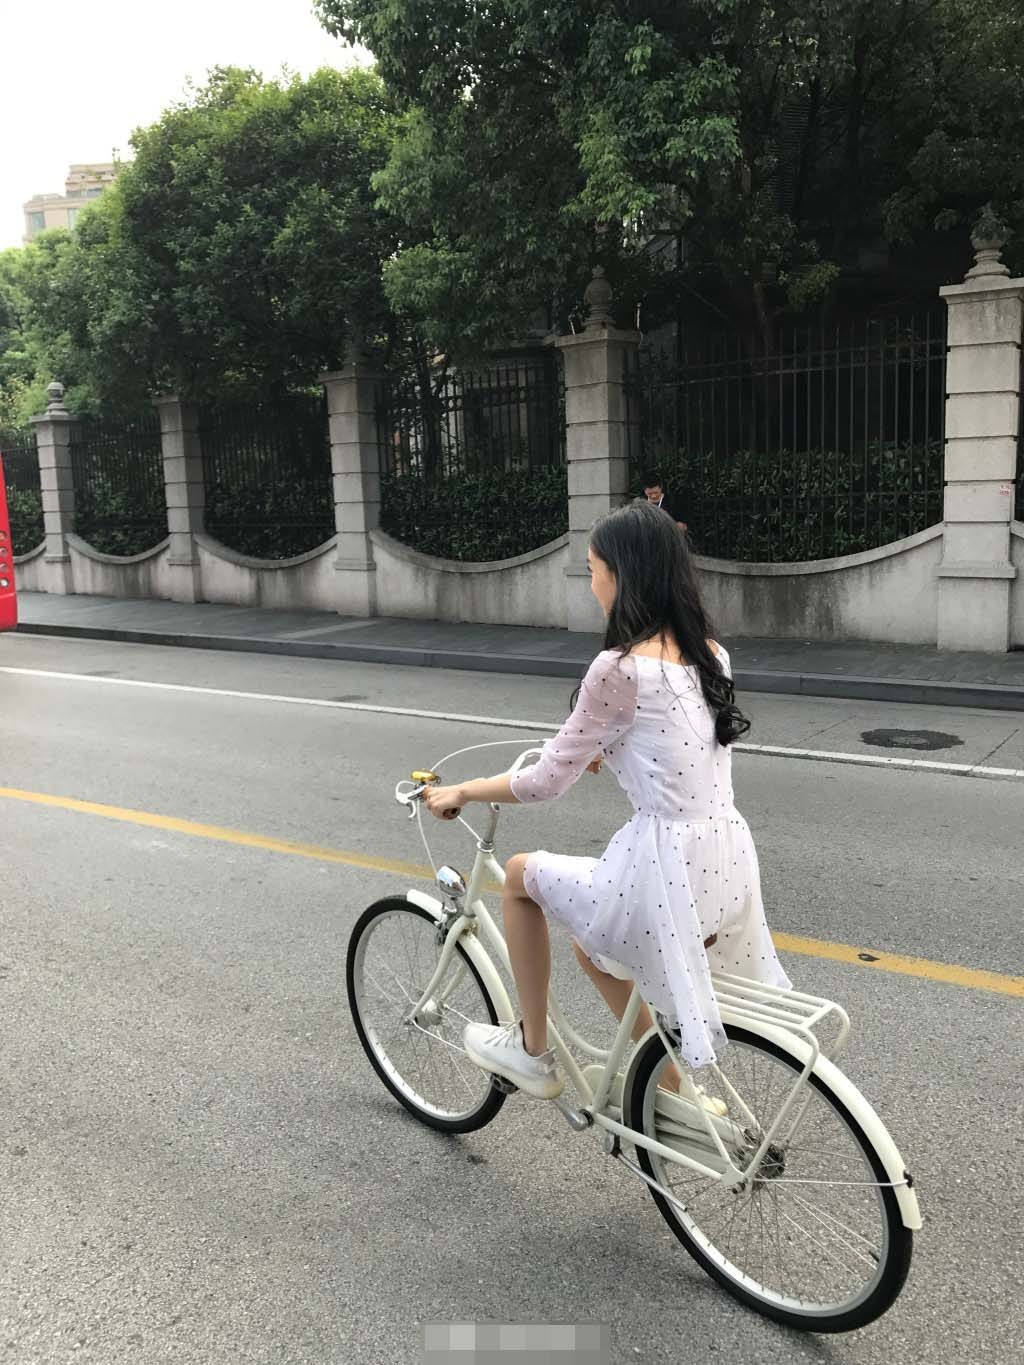 网友偶遇baby骑车照片她身穿薄纱裙骑自行车少女范十足